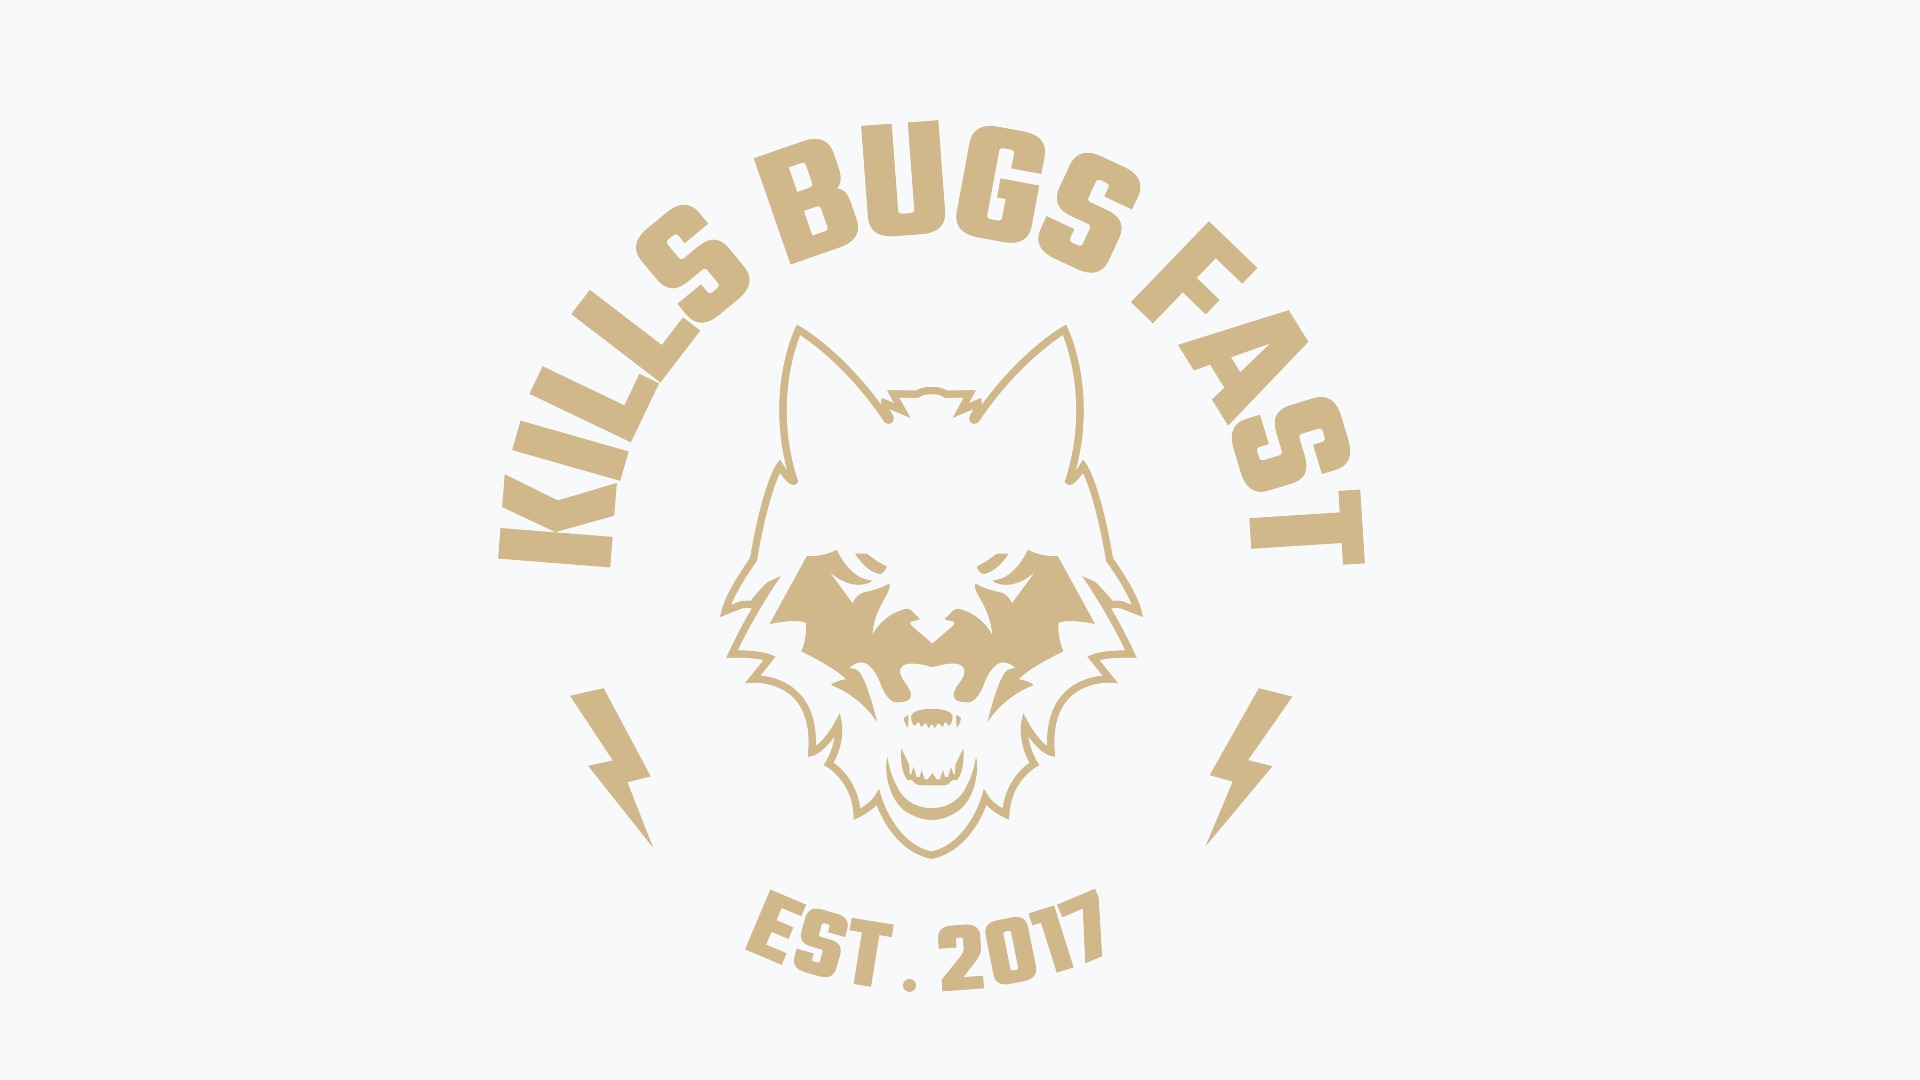 Kills-bugs-fast-Fullskjerm.jpg